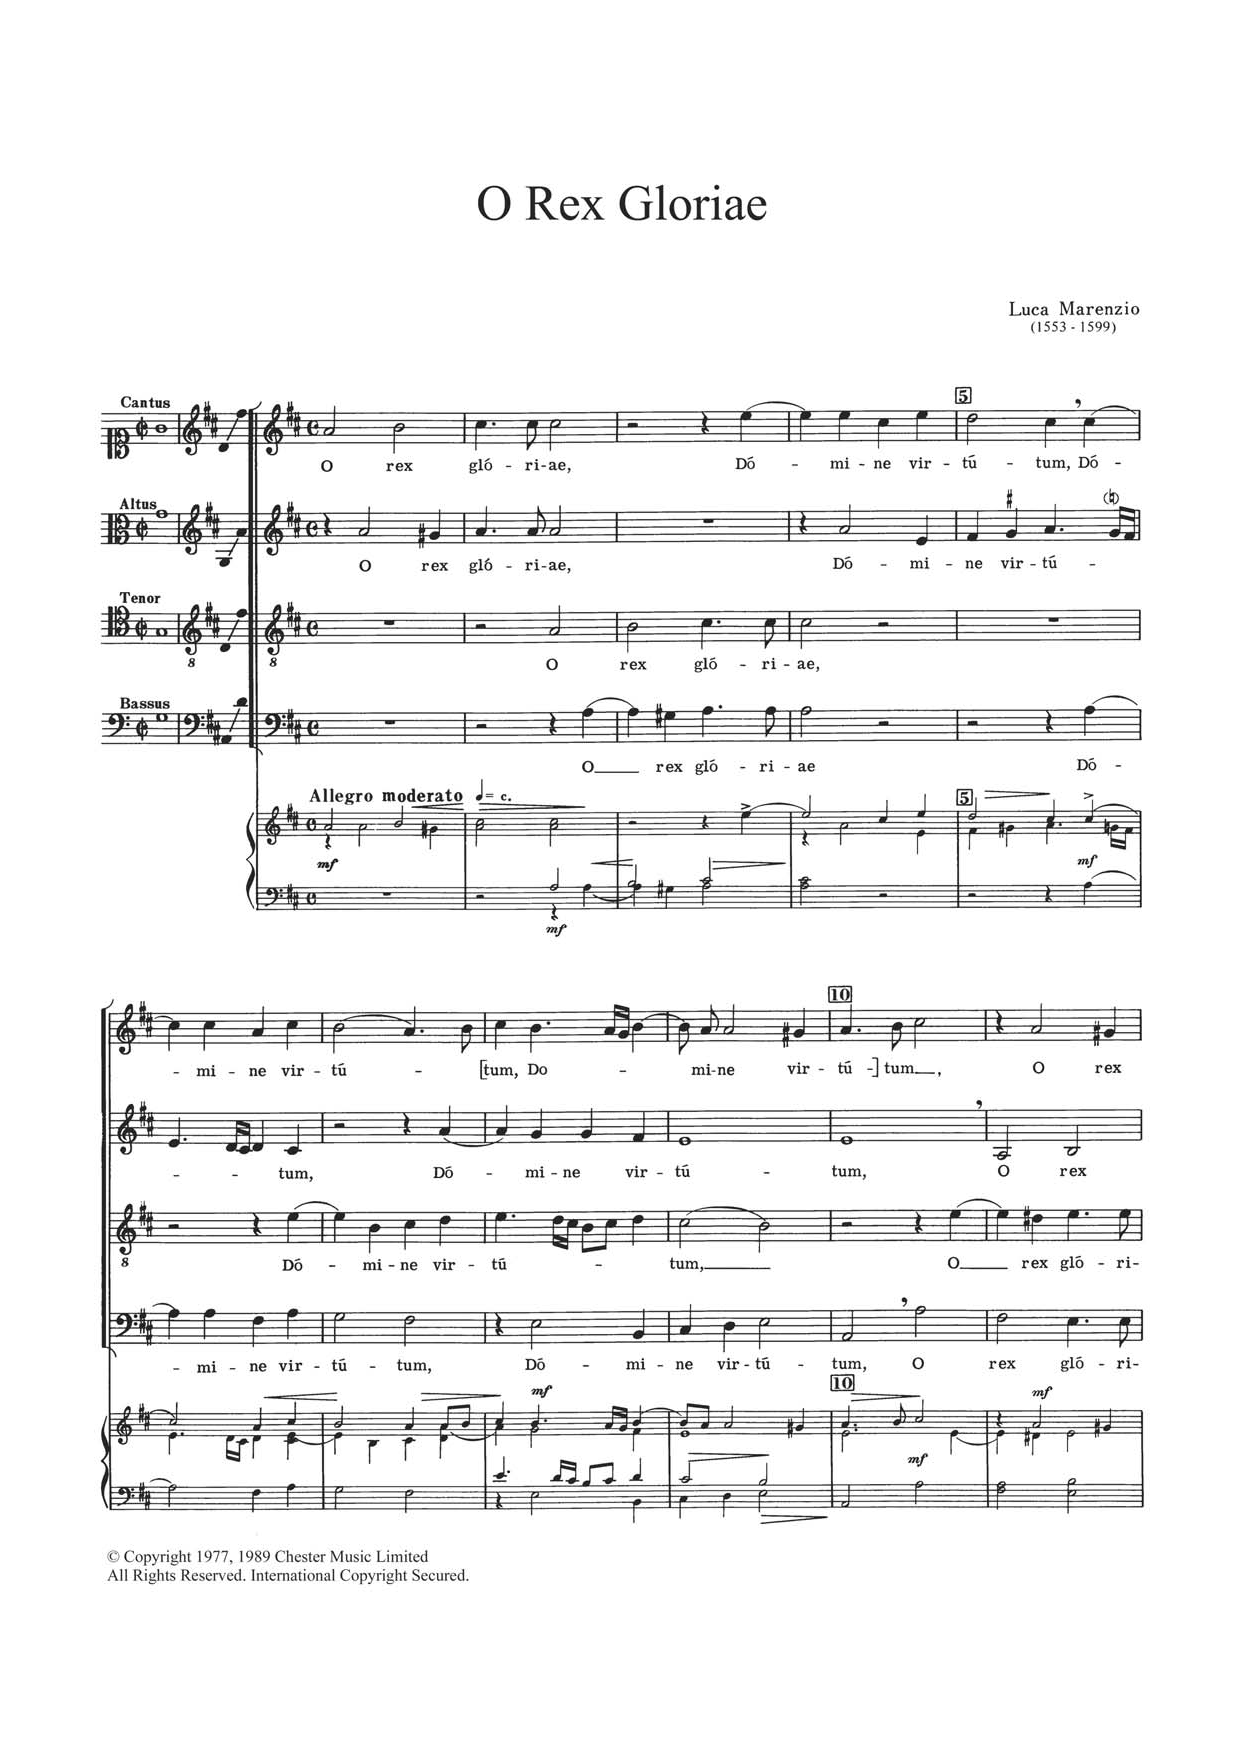 Luca Marenzio O Rex Gloriae sheet music notes and chords arranged for Choir